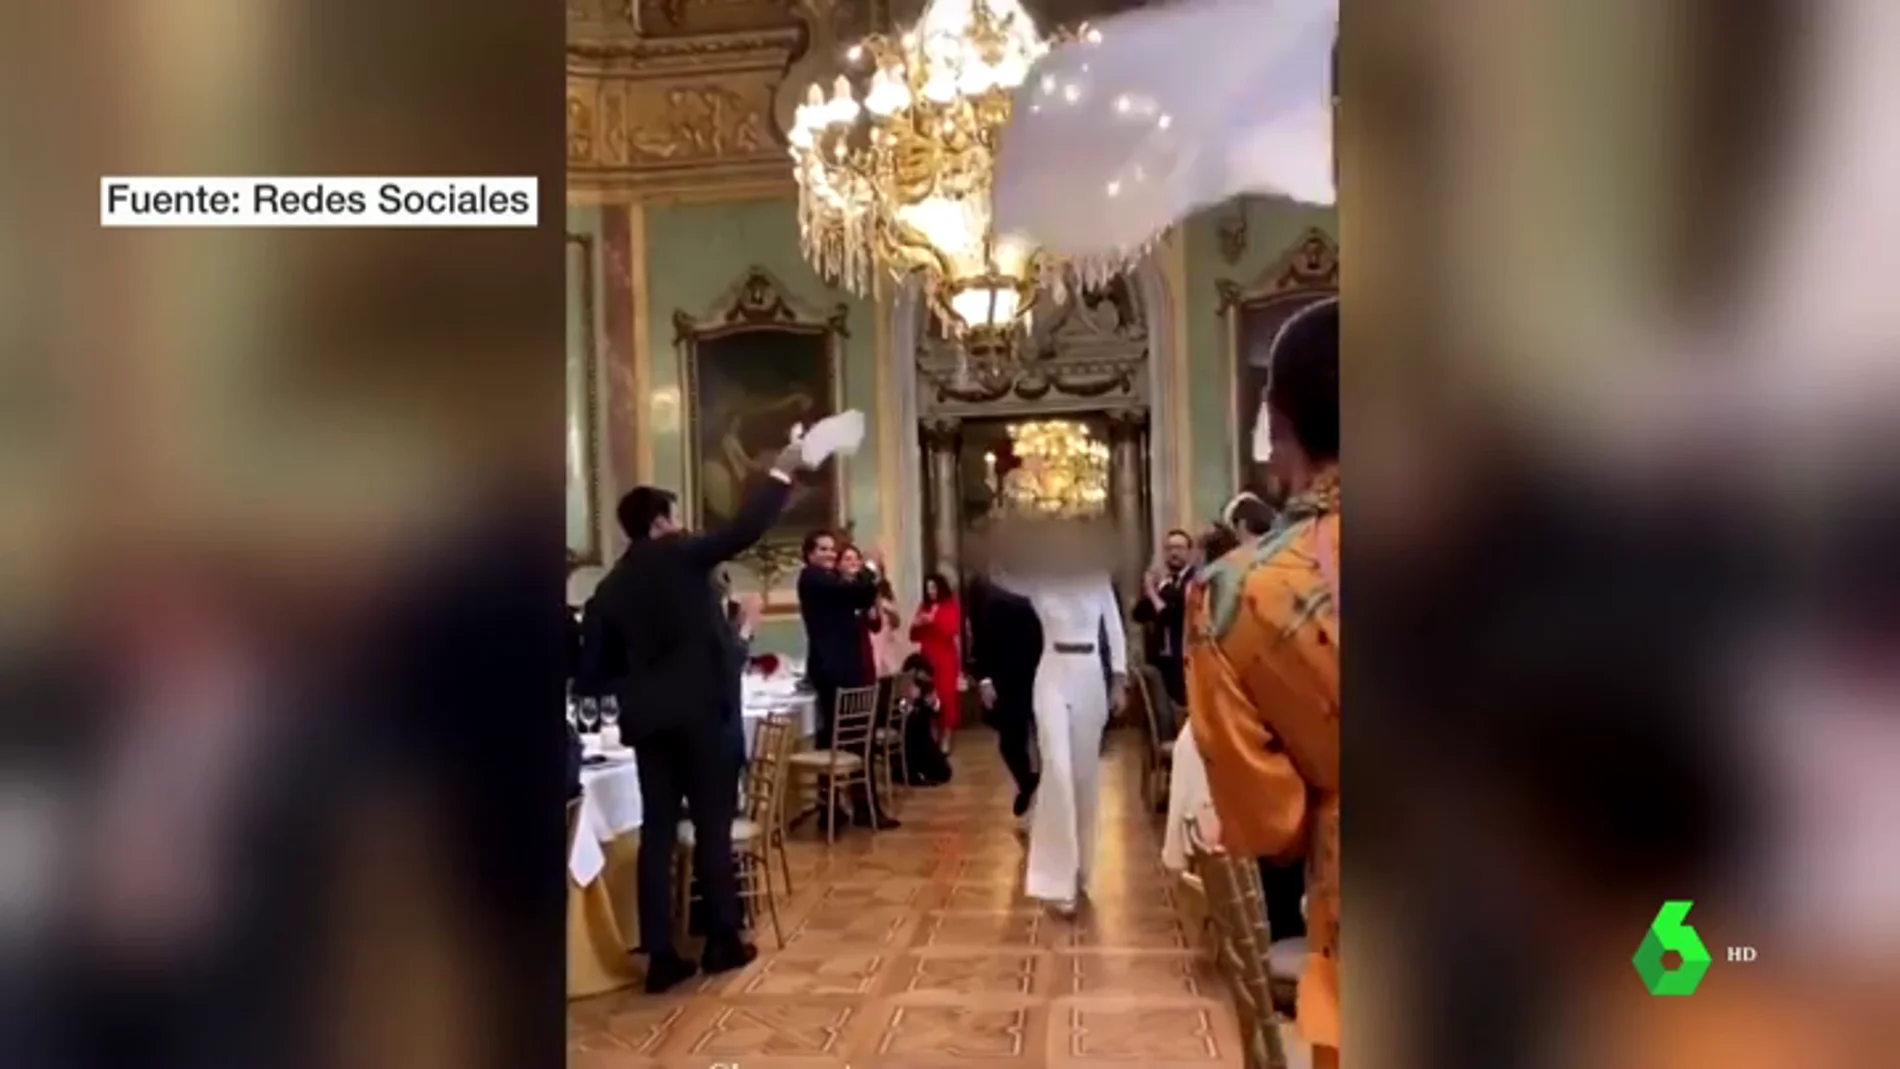 Una boda en el Casino de Madrid sin mascarillas ni distancia social desata la polémica en las redes